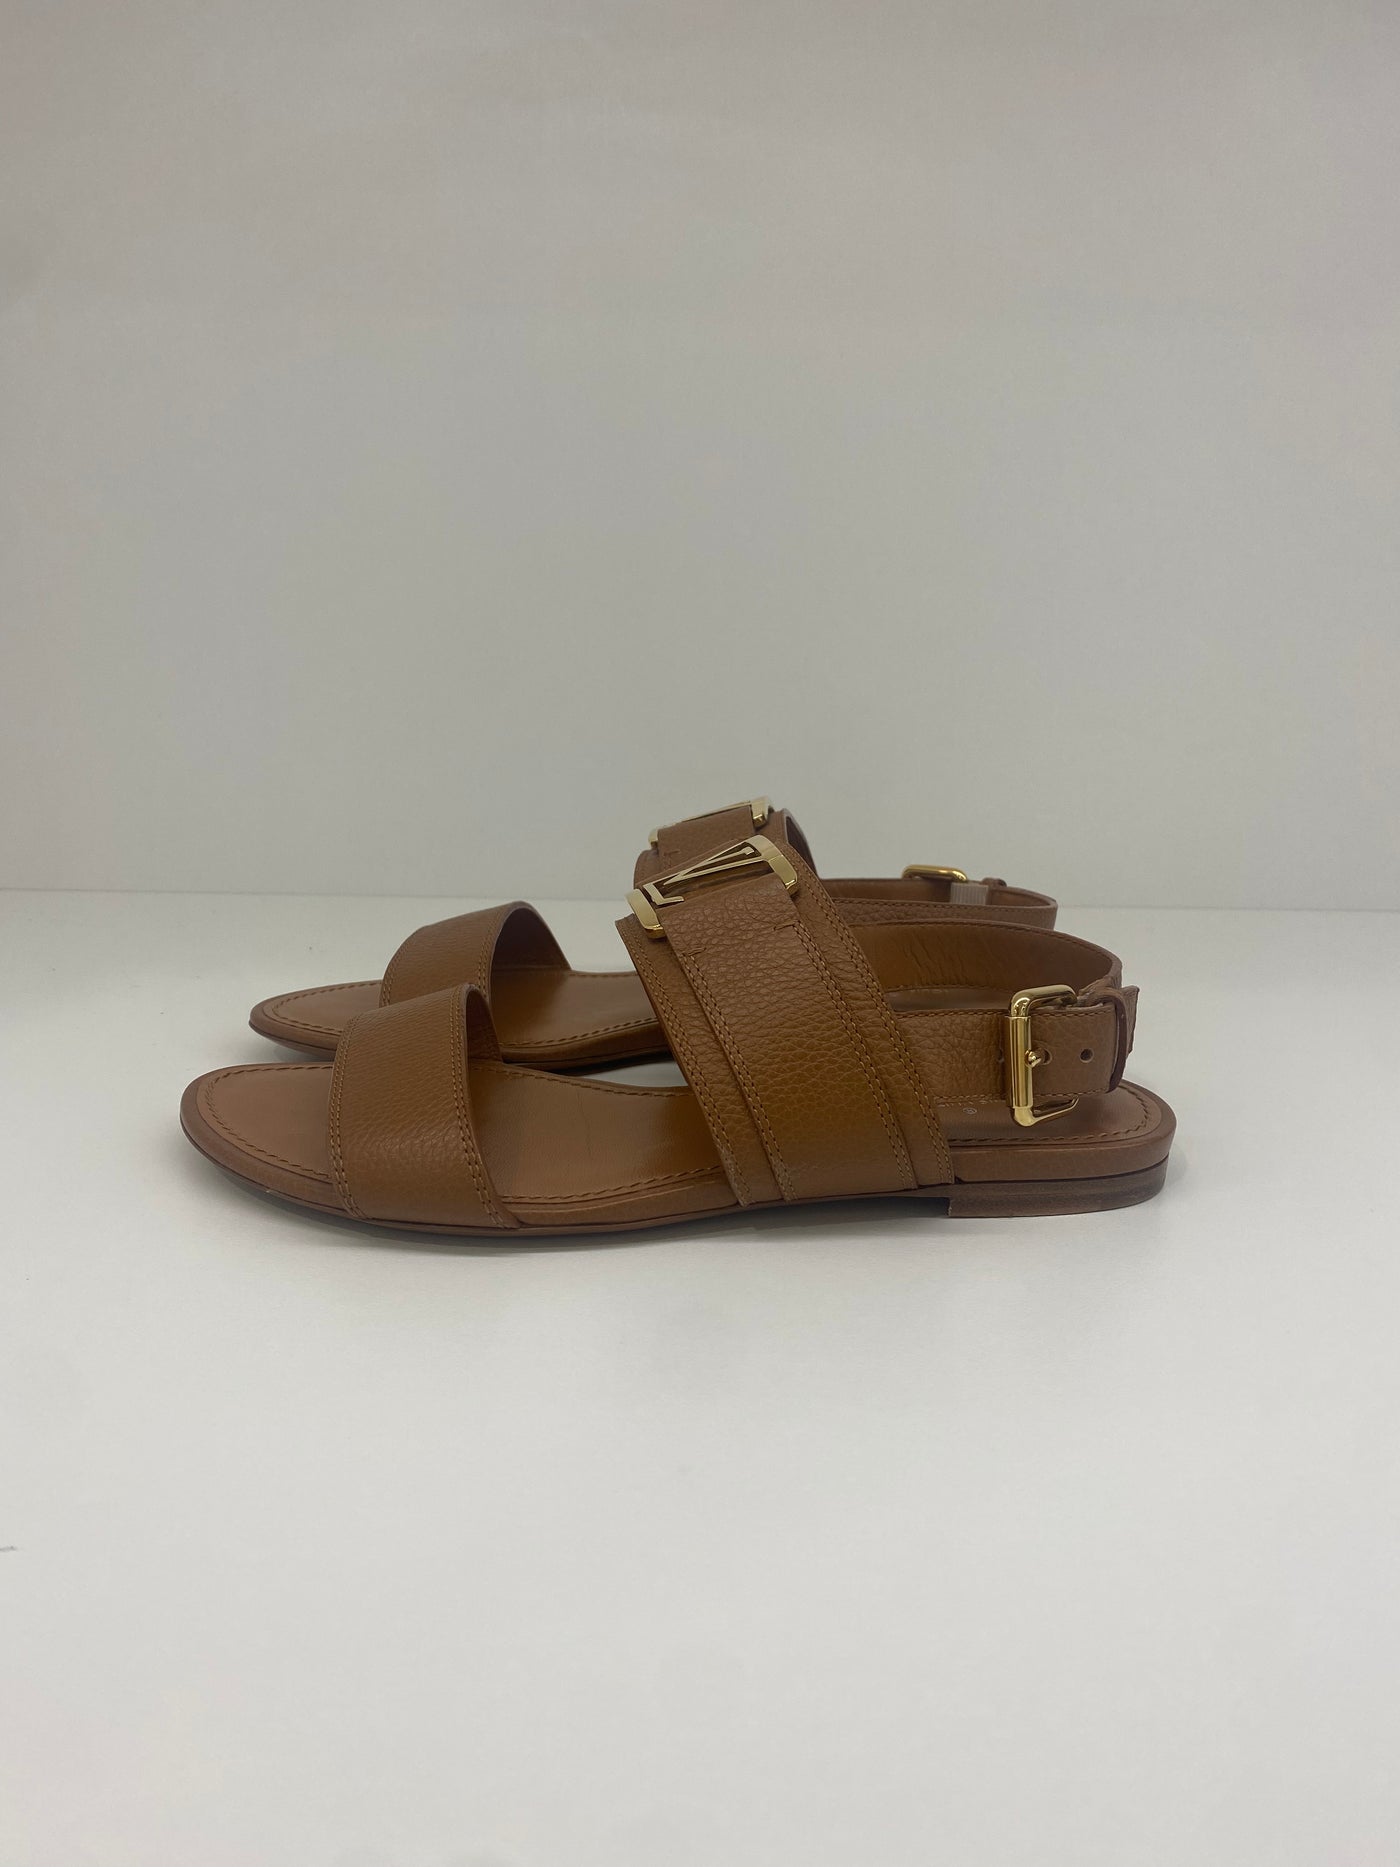 Louis Vuitton Sandals 36.5